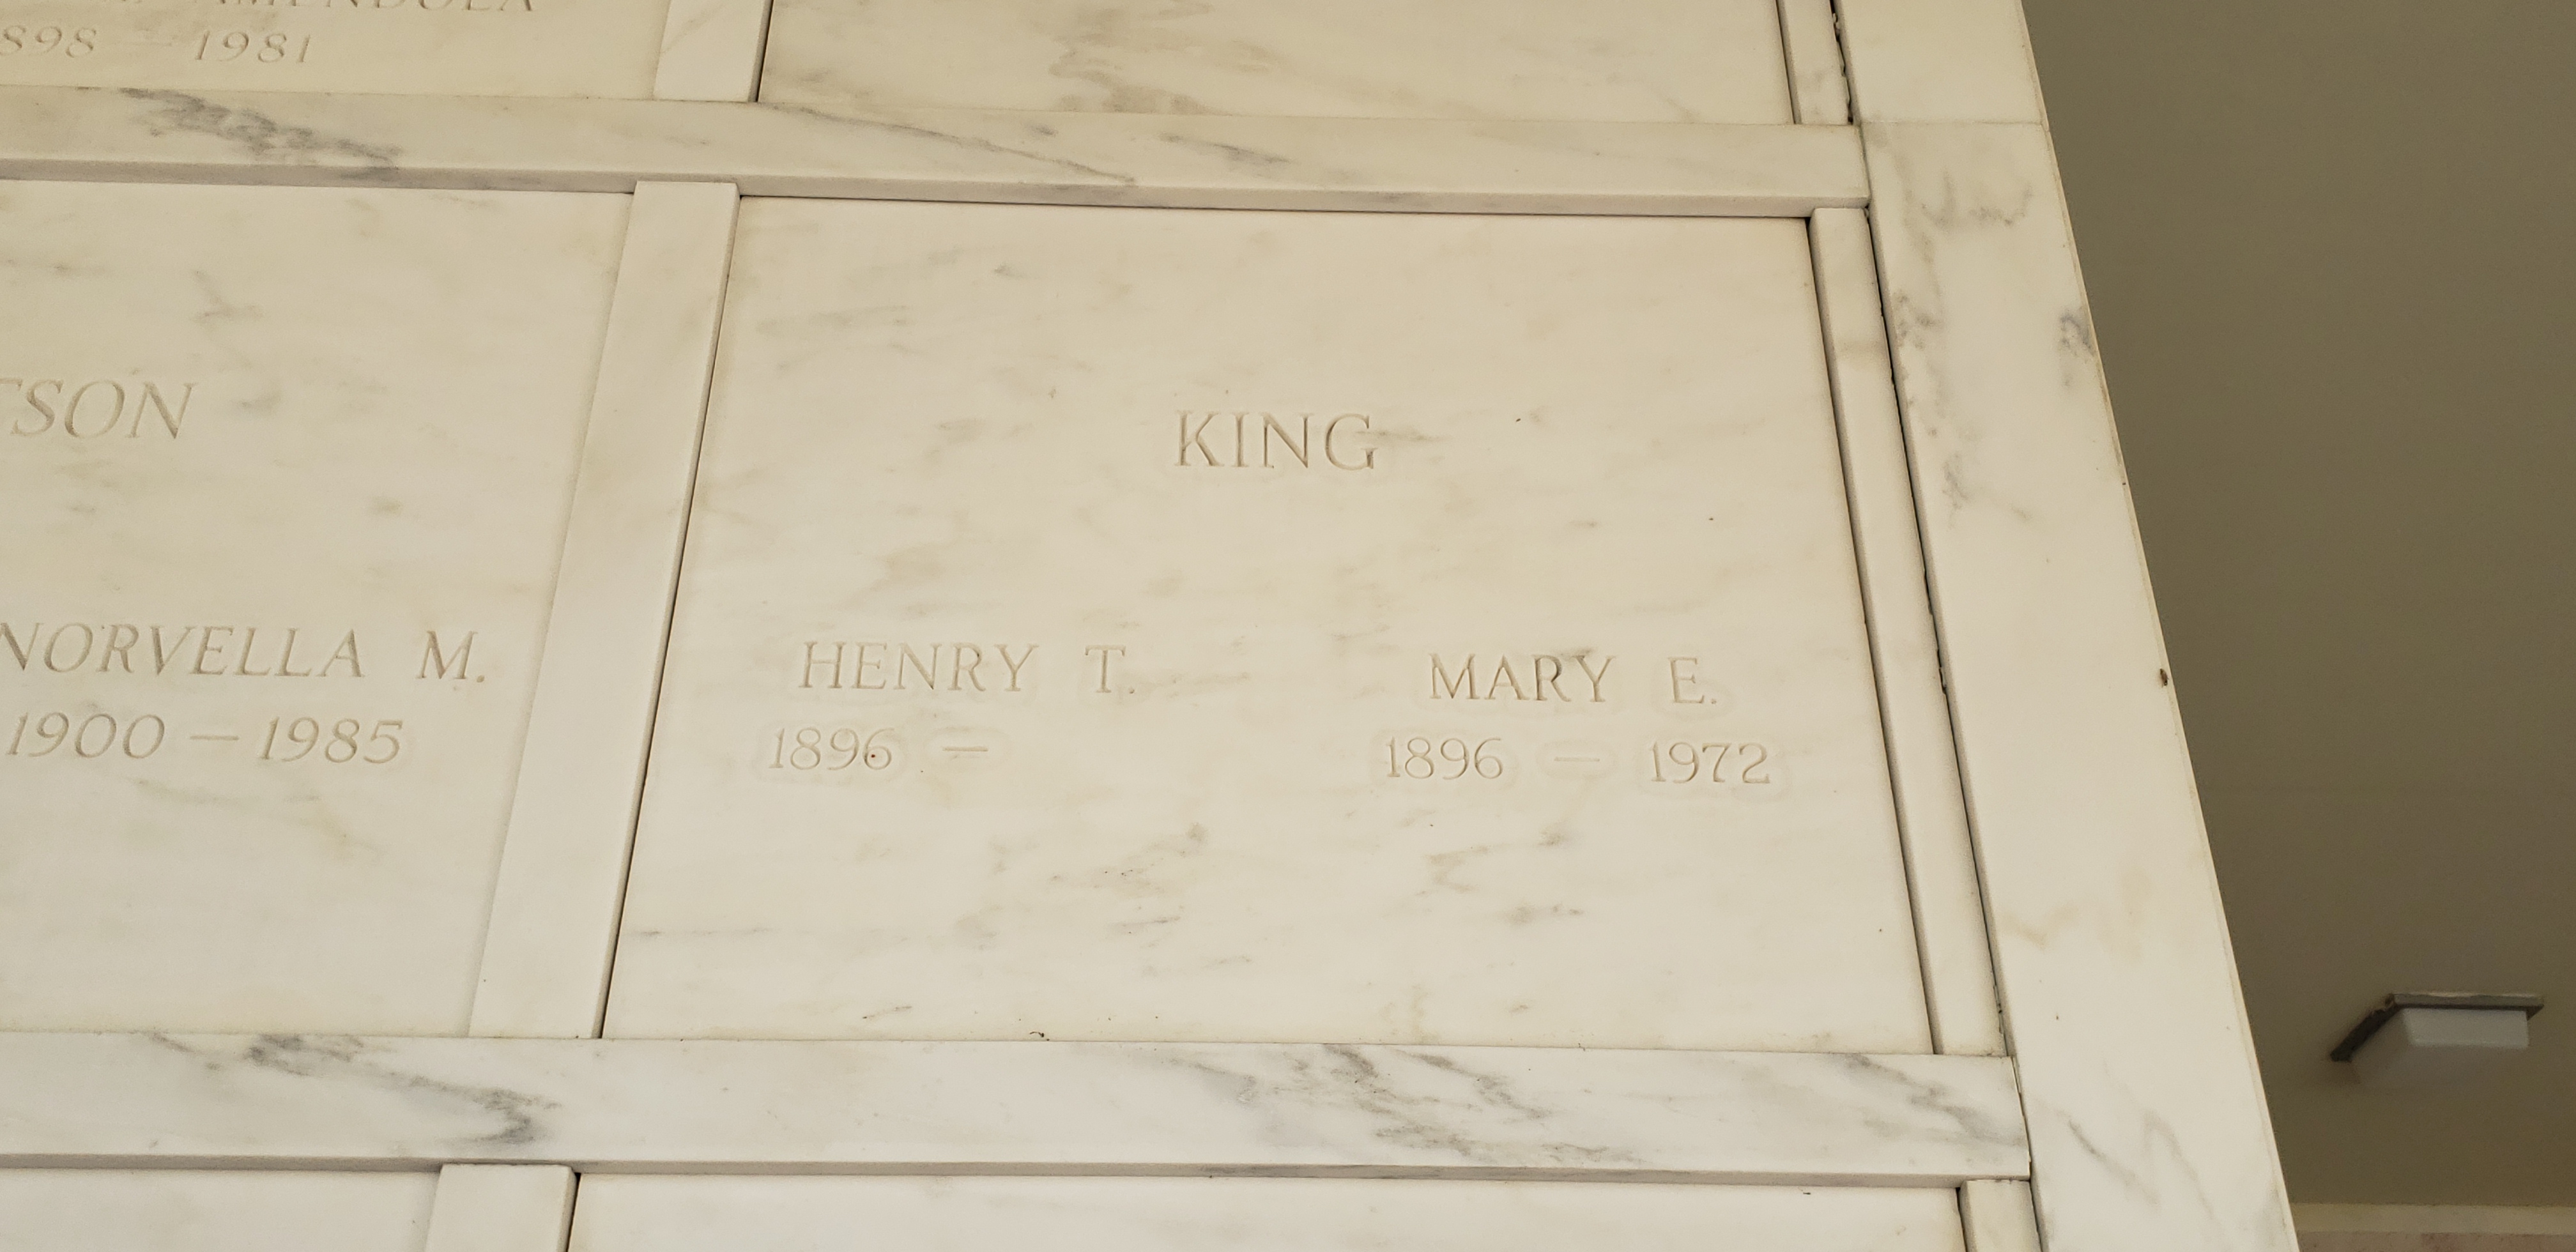 Henry T King